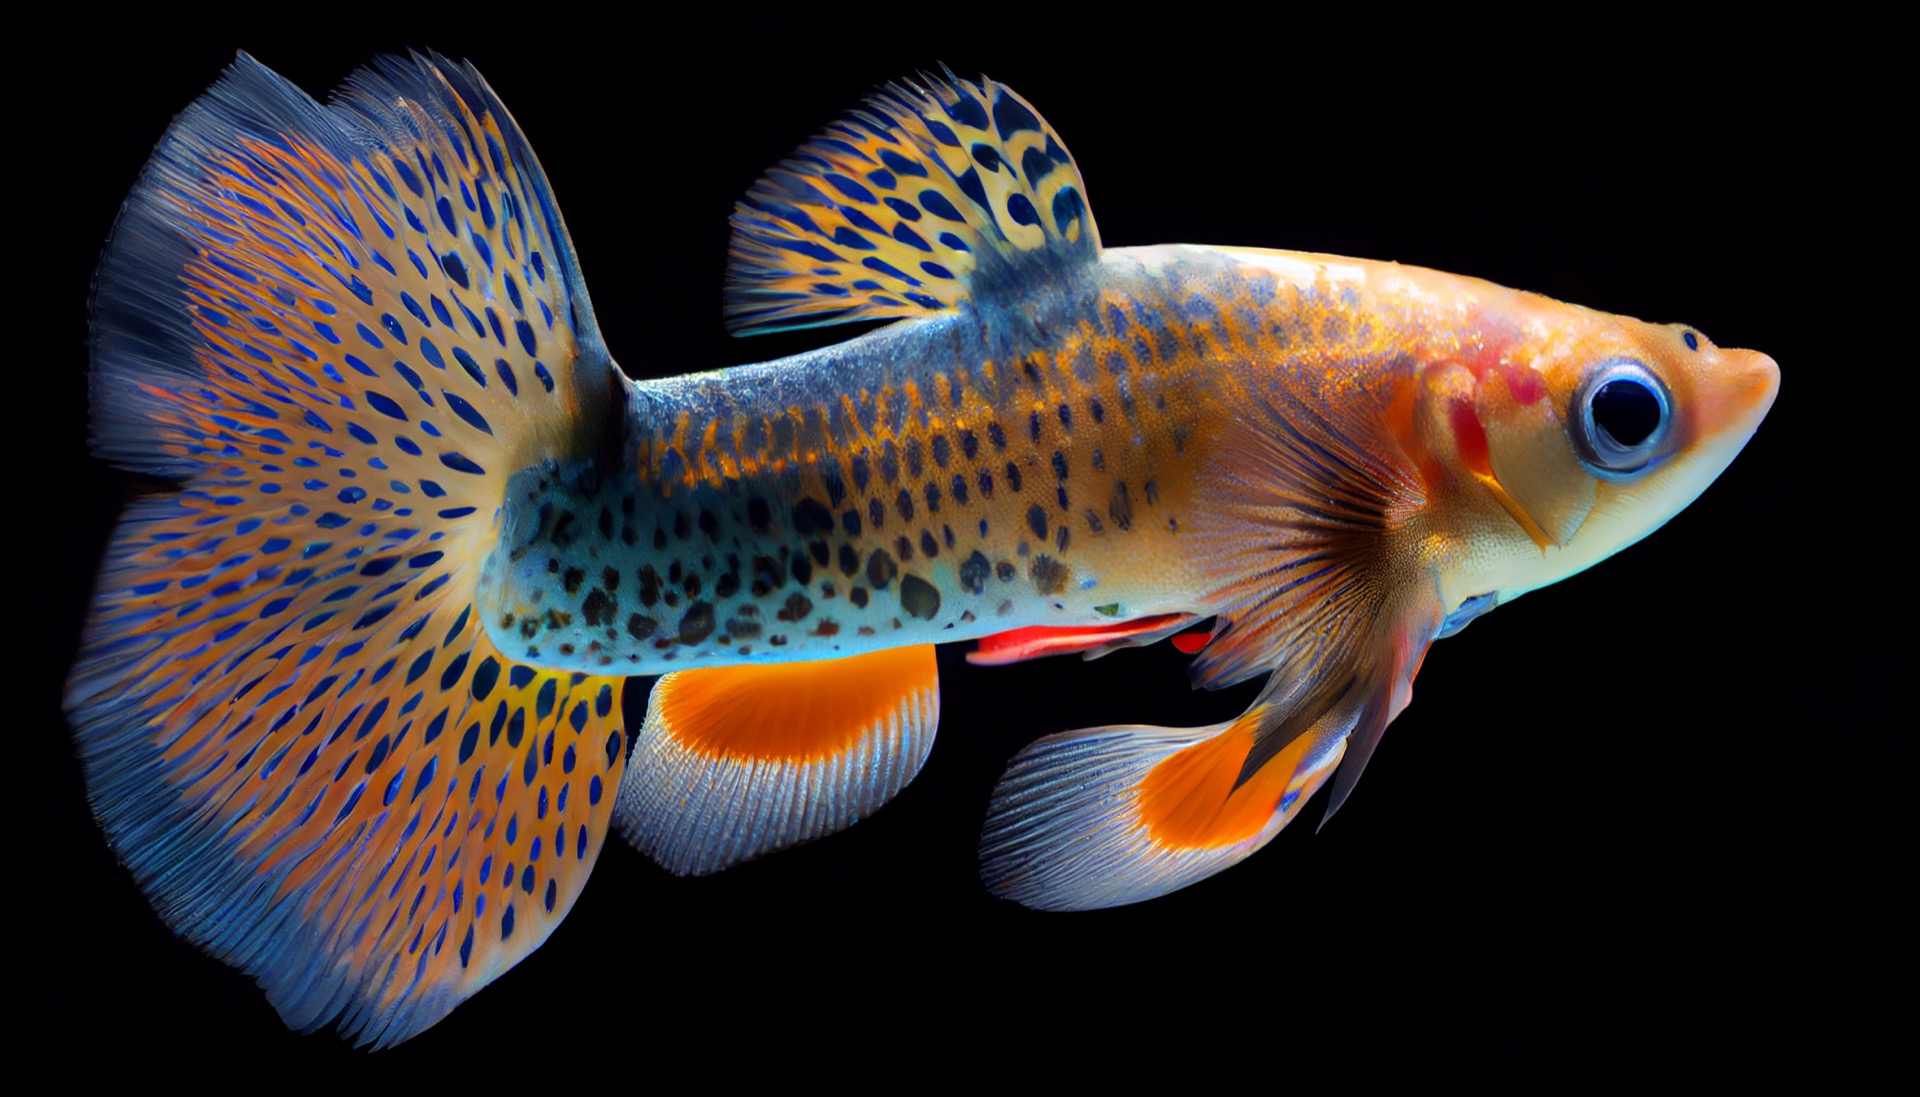 Le guppy, un poisson tropical populaire en aquariophilie, est un exemple classique de poisson ovovipare. © Daeyeon Kim, Adobe Stock